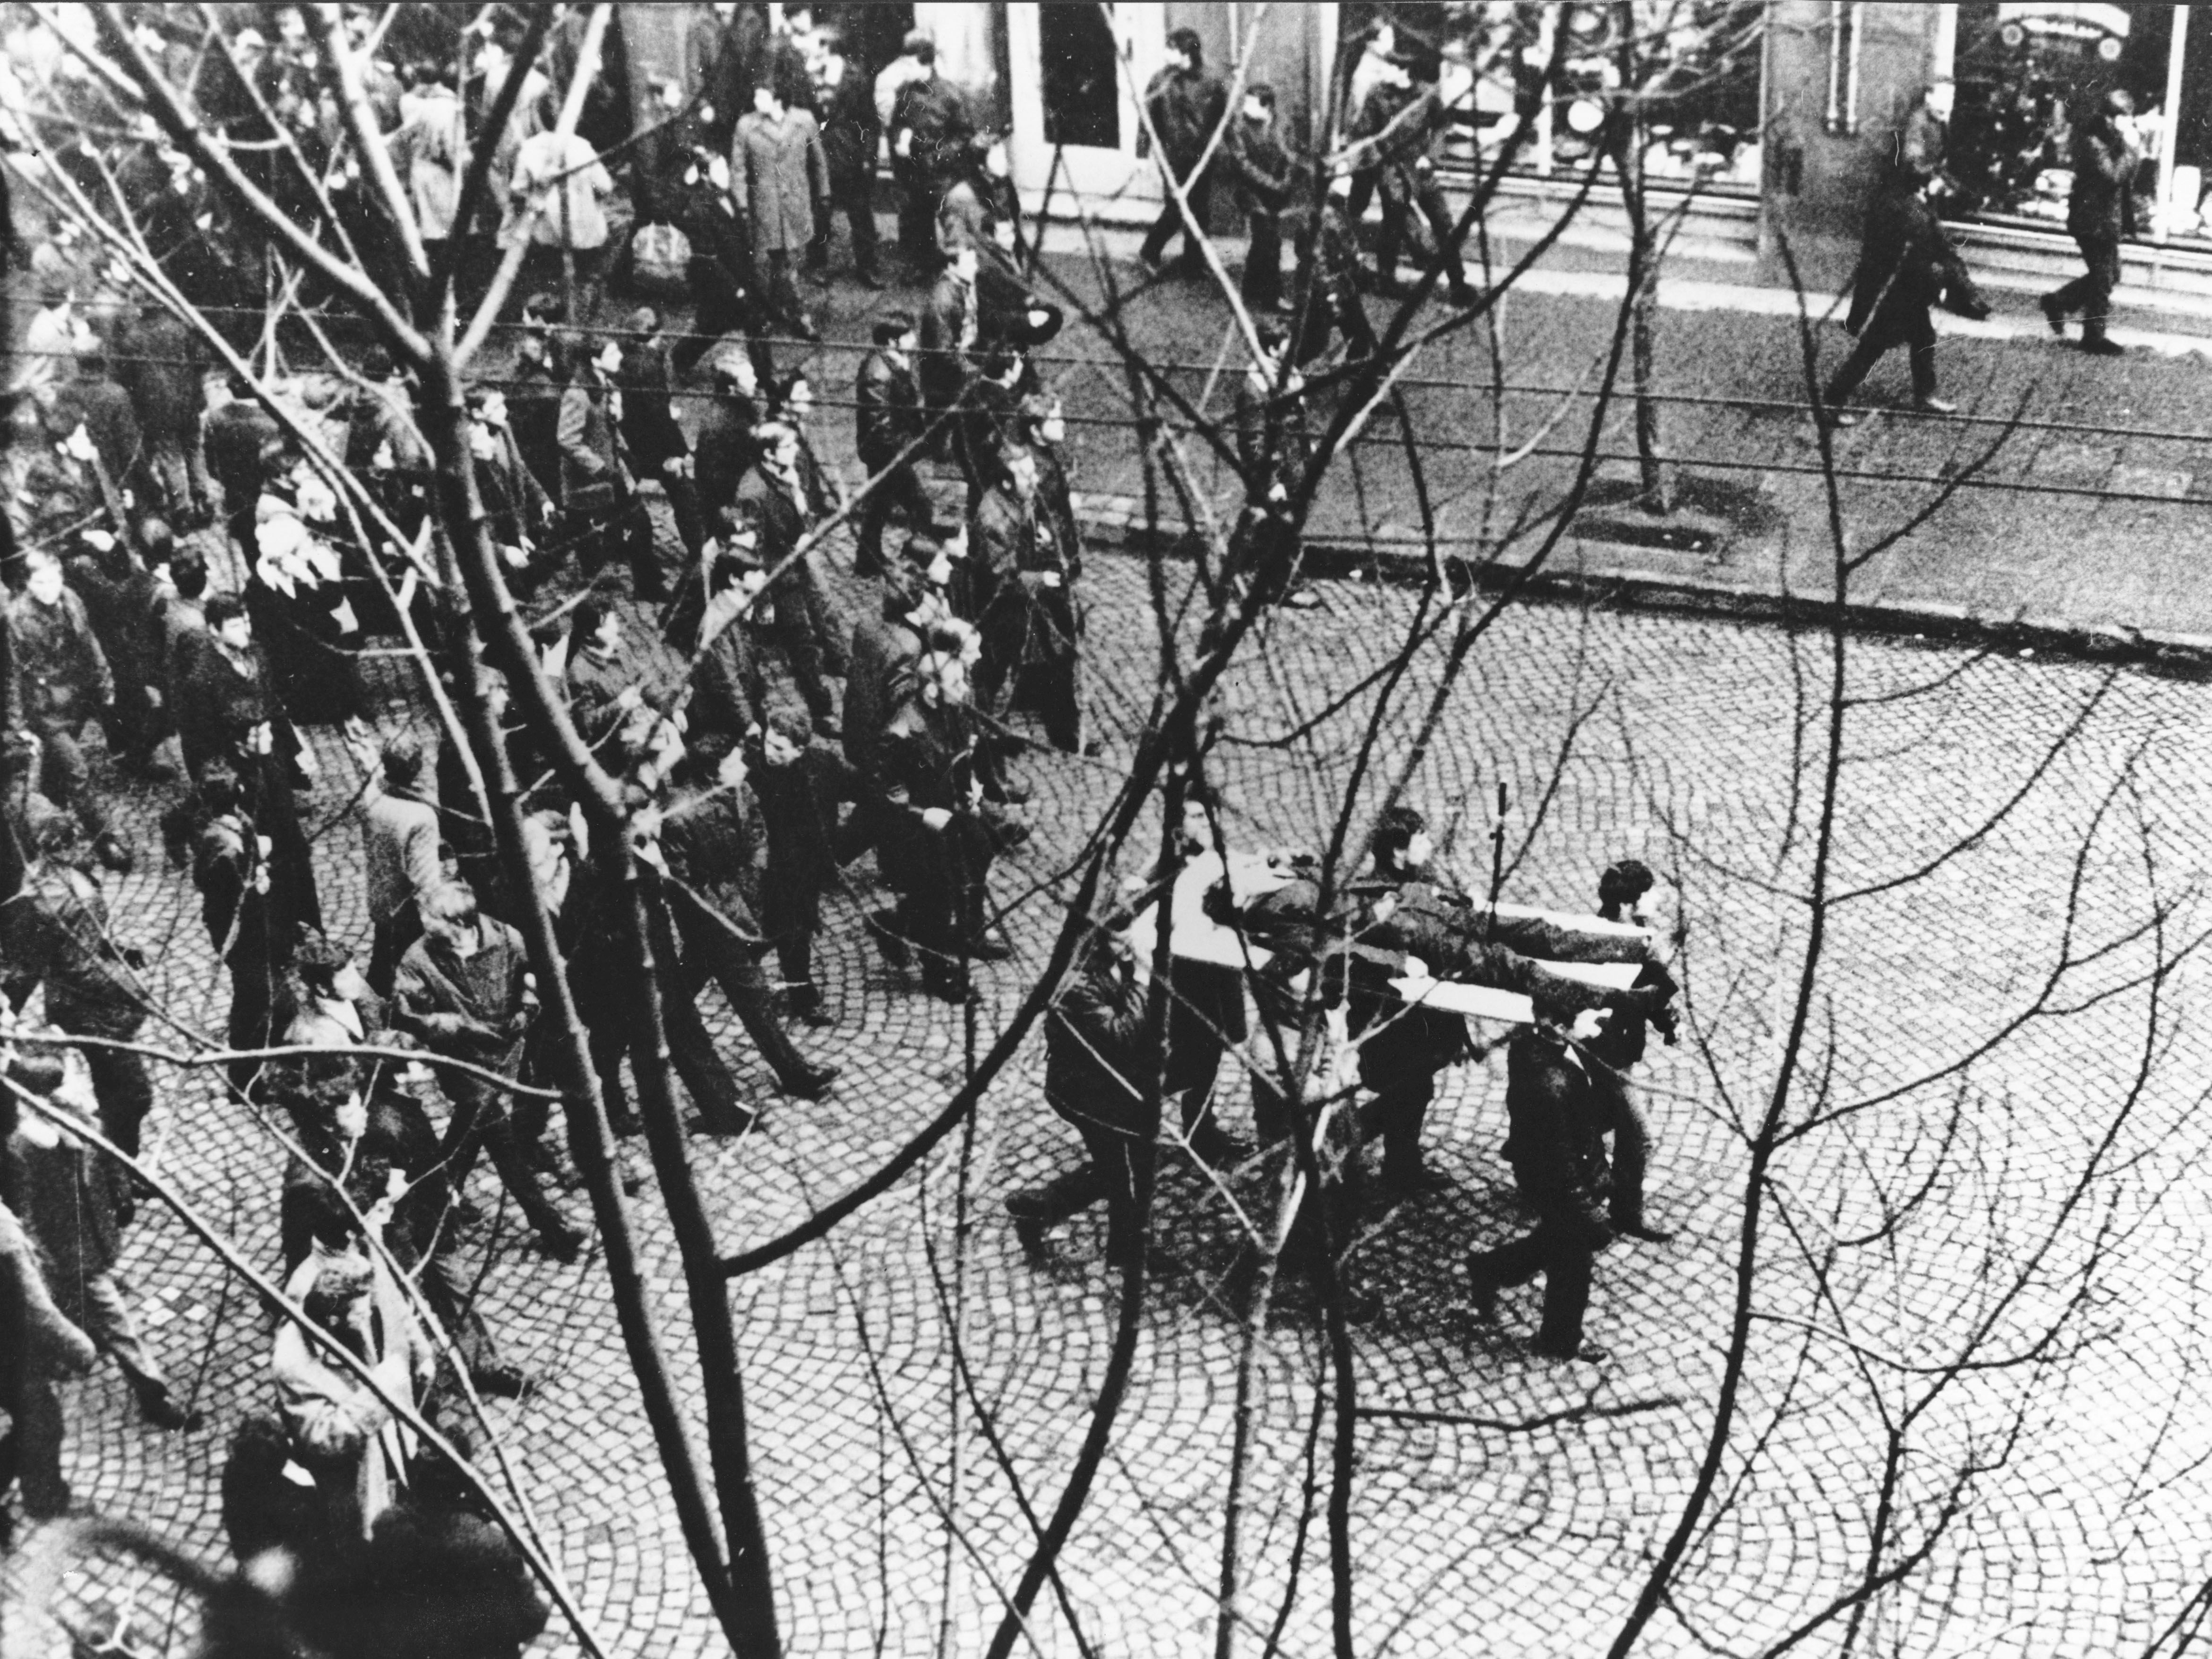 Demonstracje Grudnia 1970 Ciało Zbyszka Godlewskiego niesione przez demonstrantów Wikipedia Commons, domena publiczna